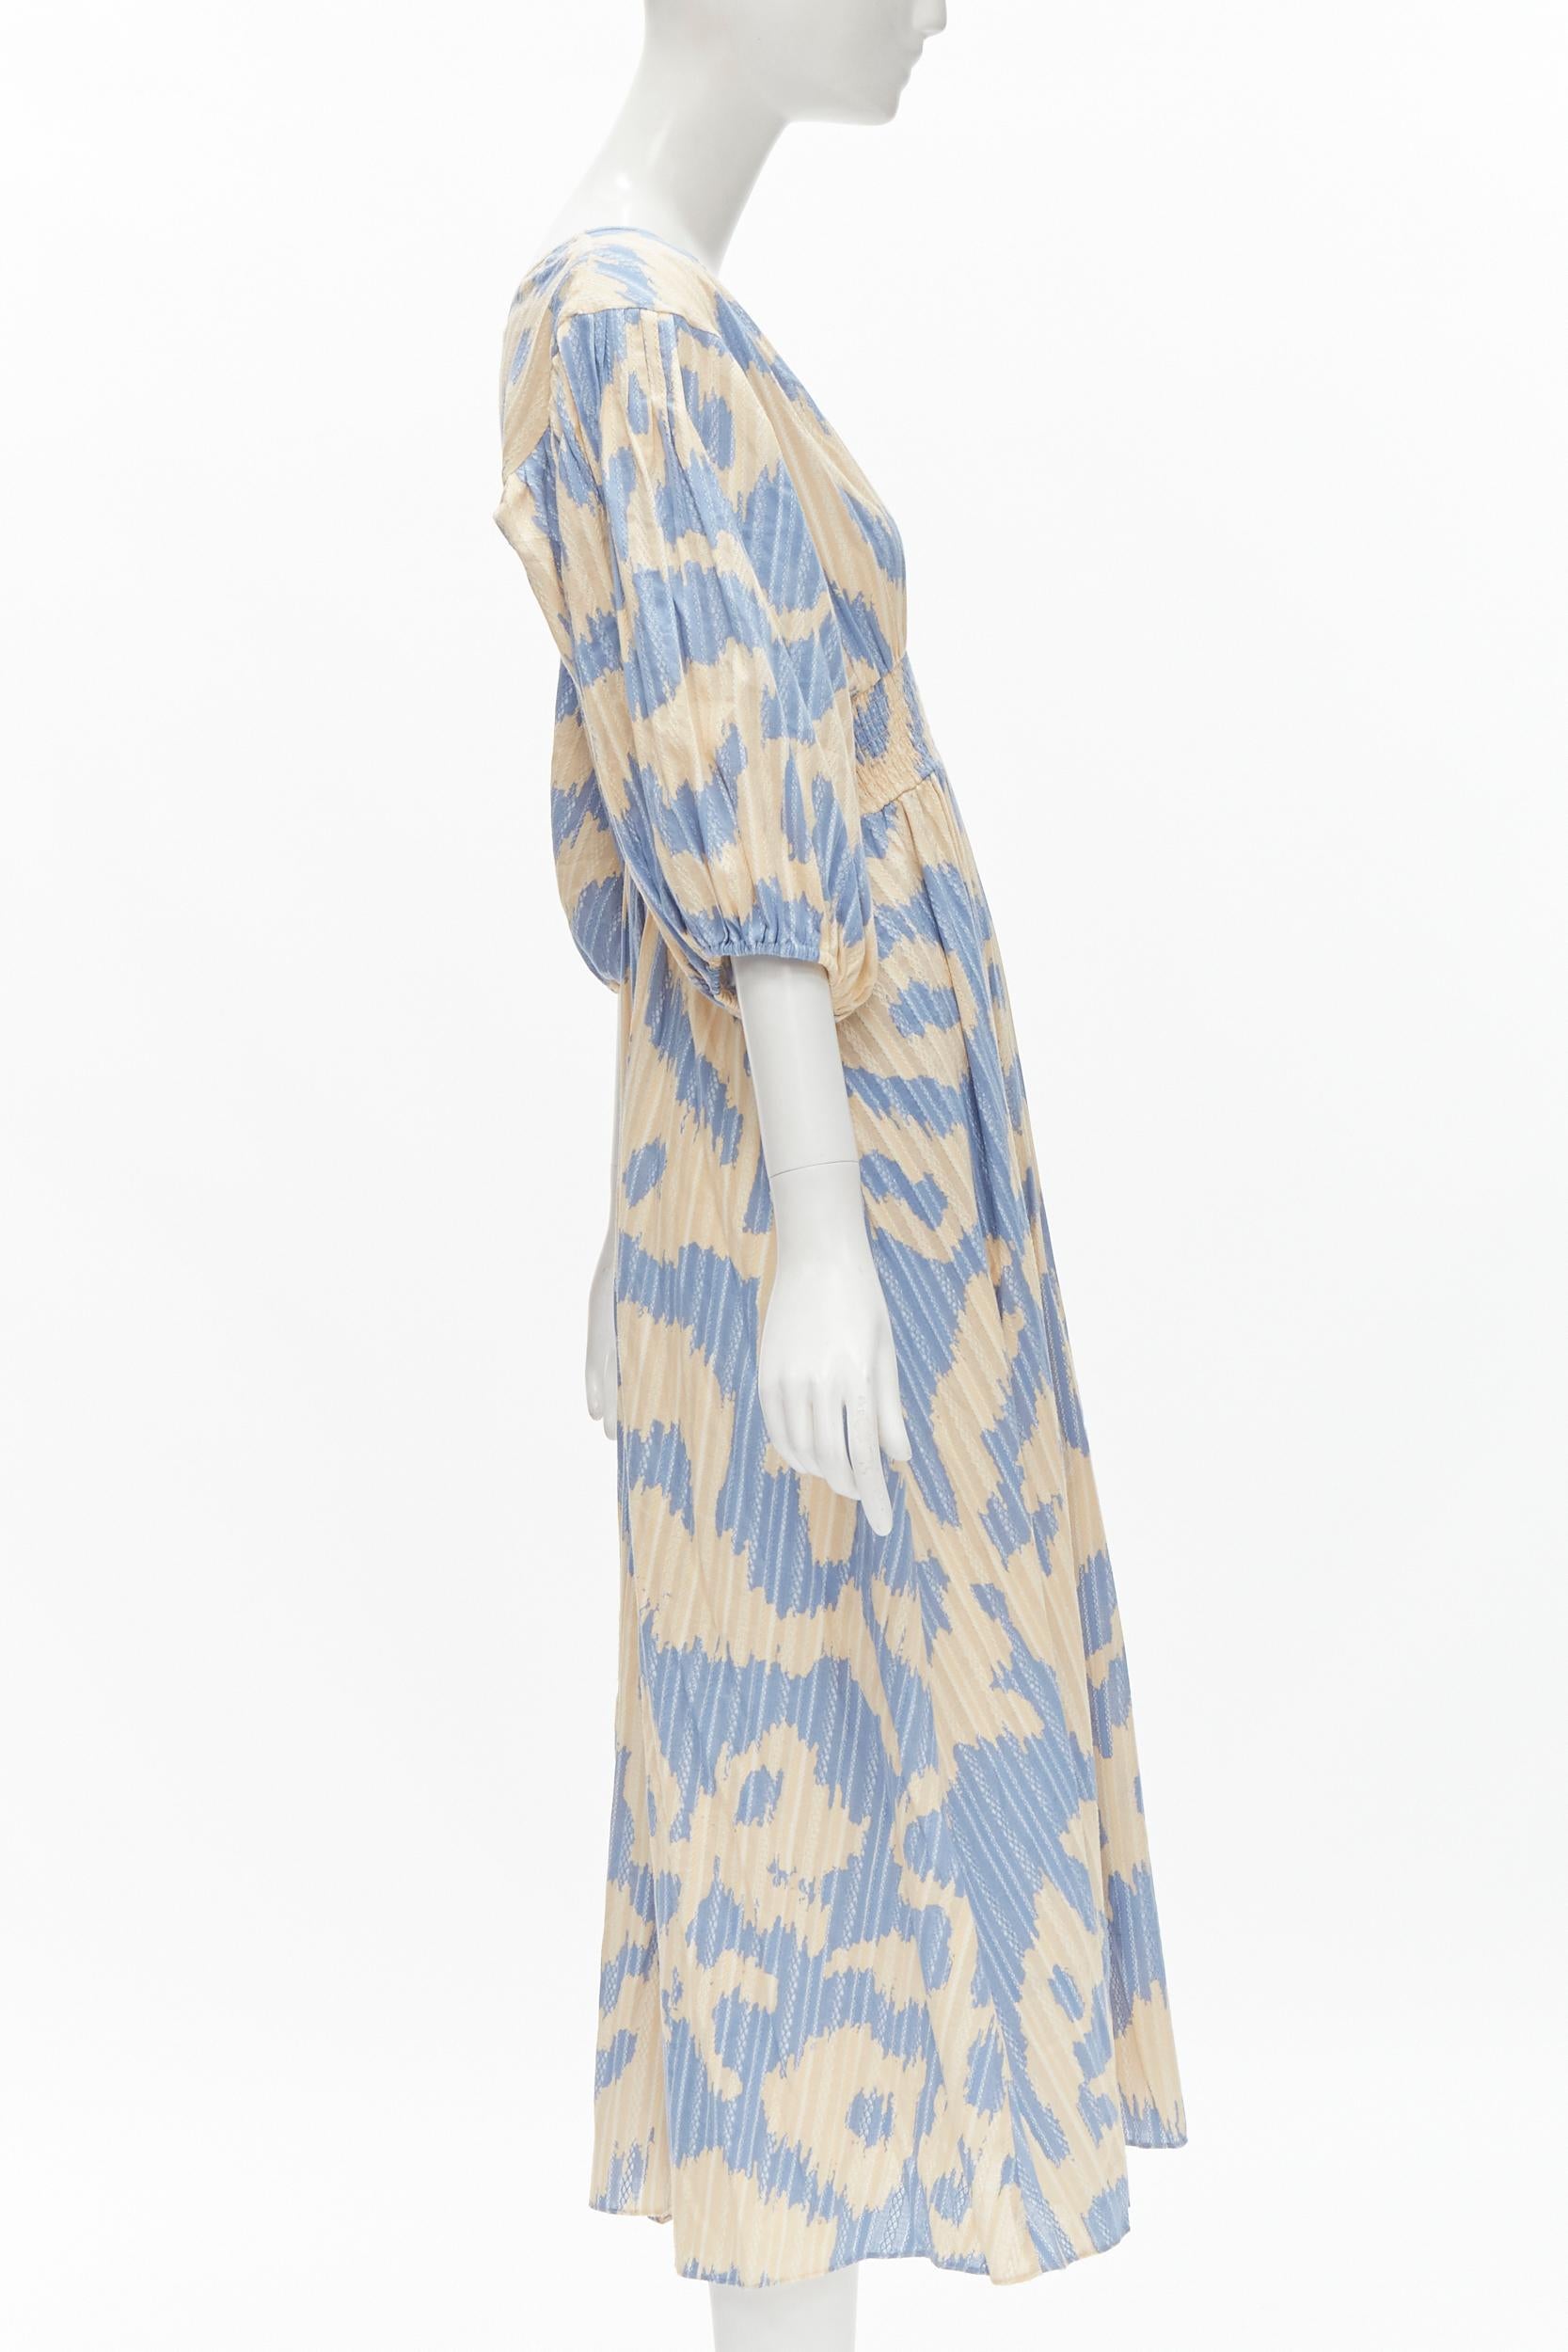 Women's DIANE VON FURSTENBERG beige blue print lattice embroidery puff sleeve dress US8 For Sale